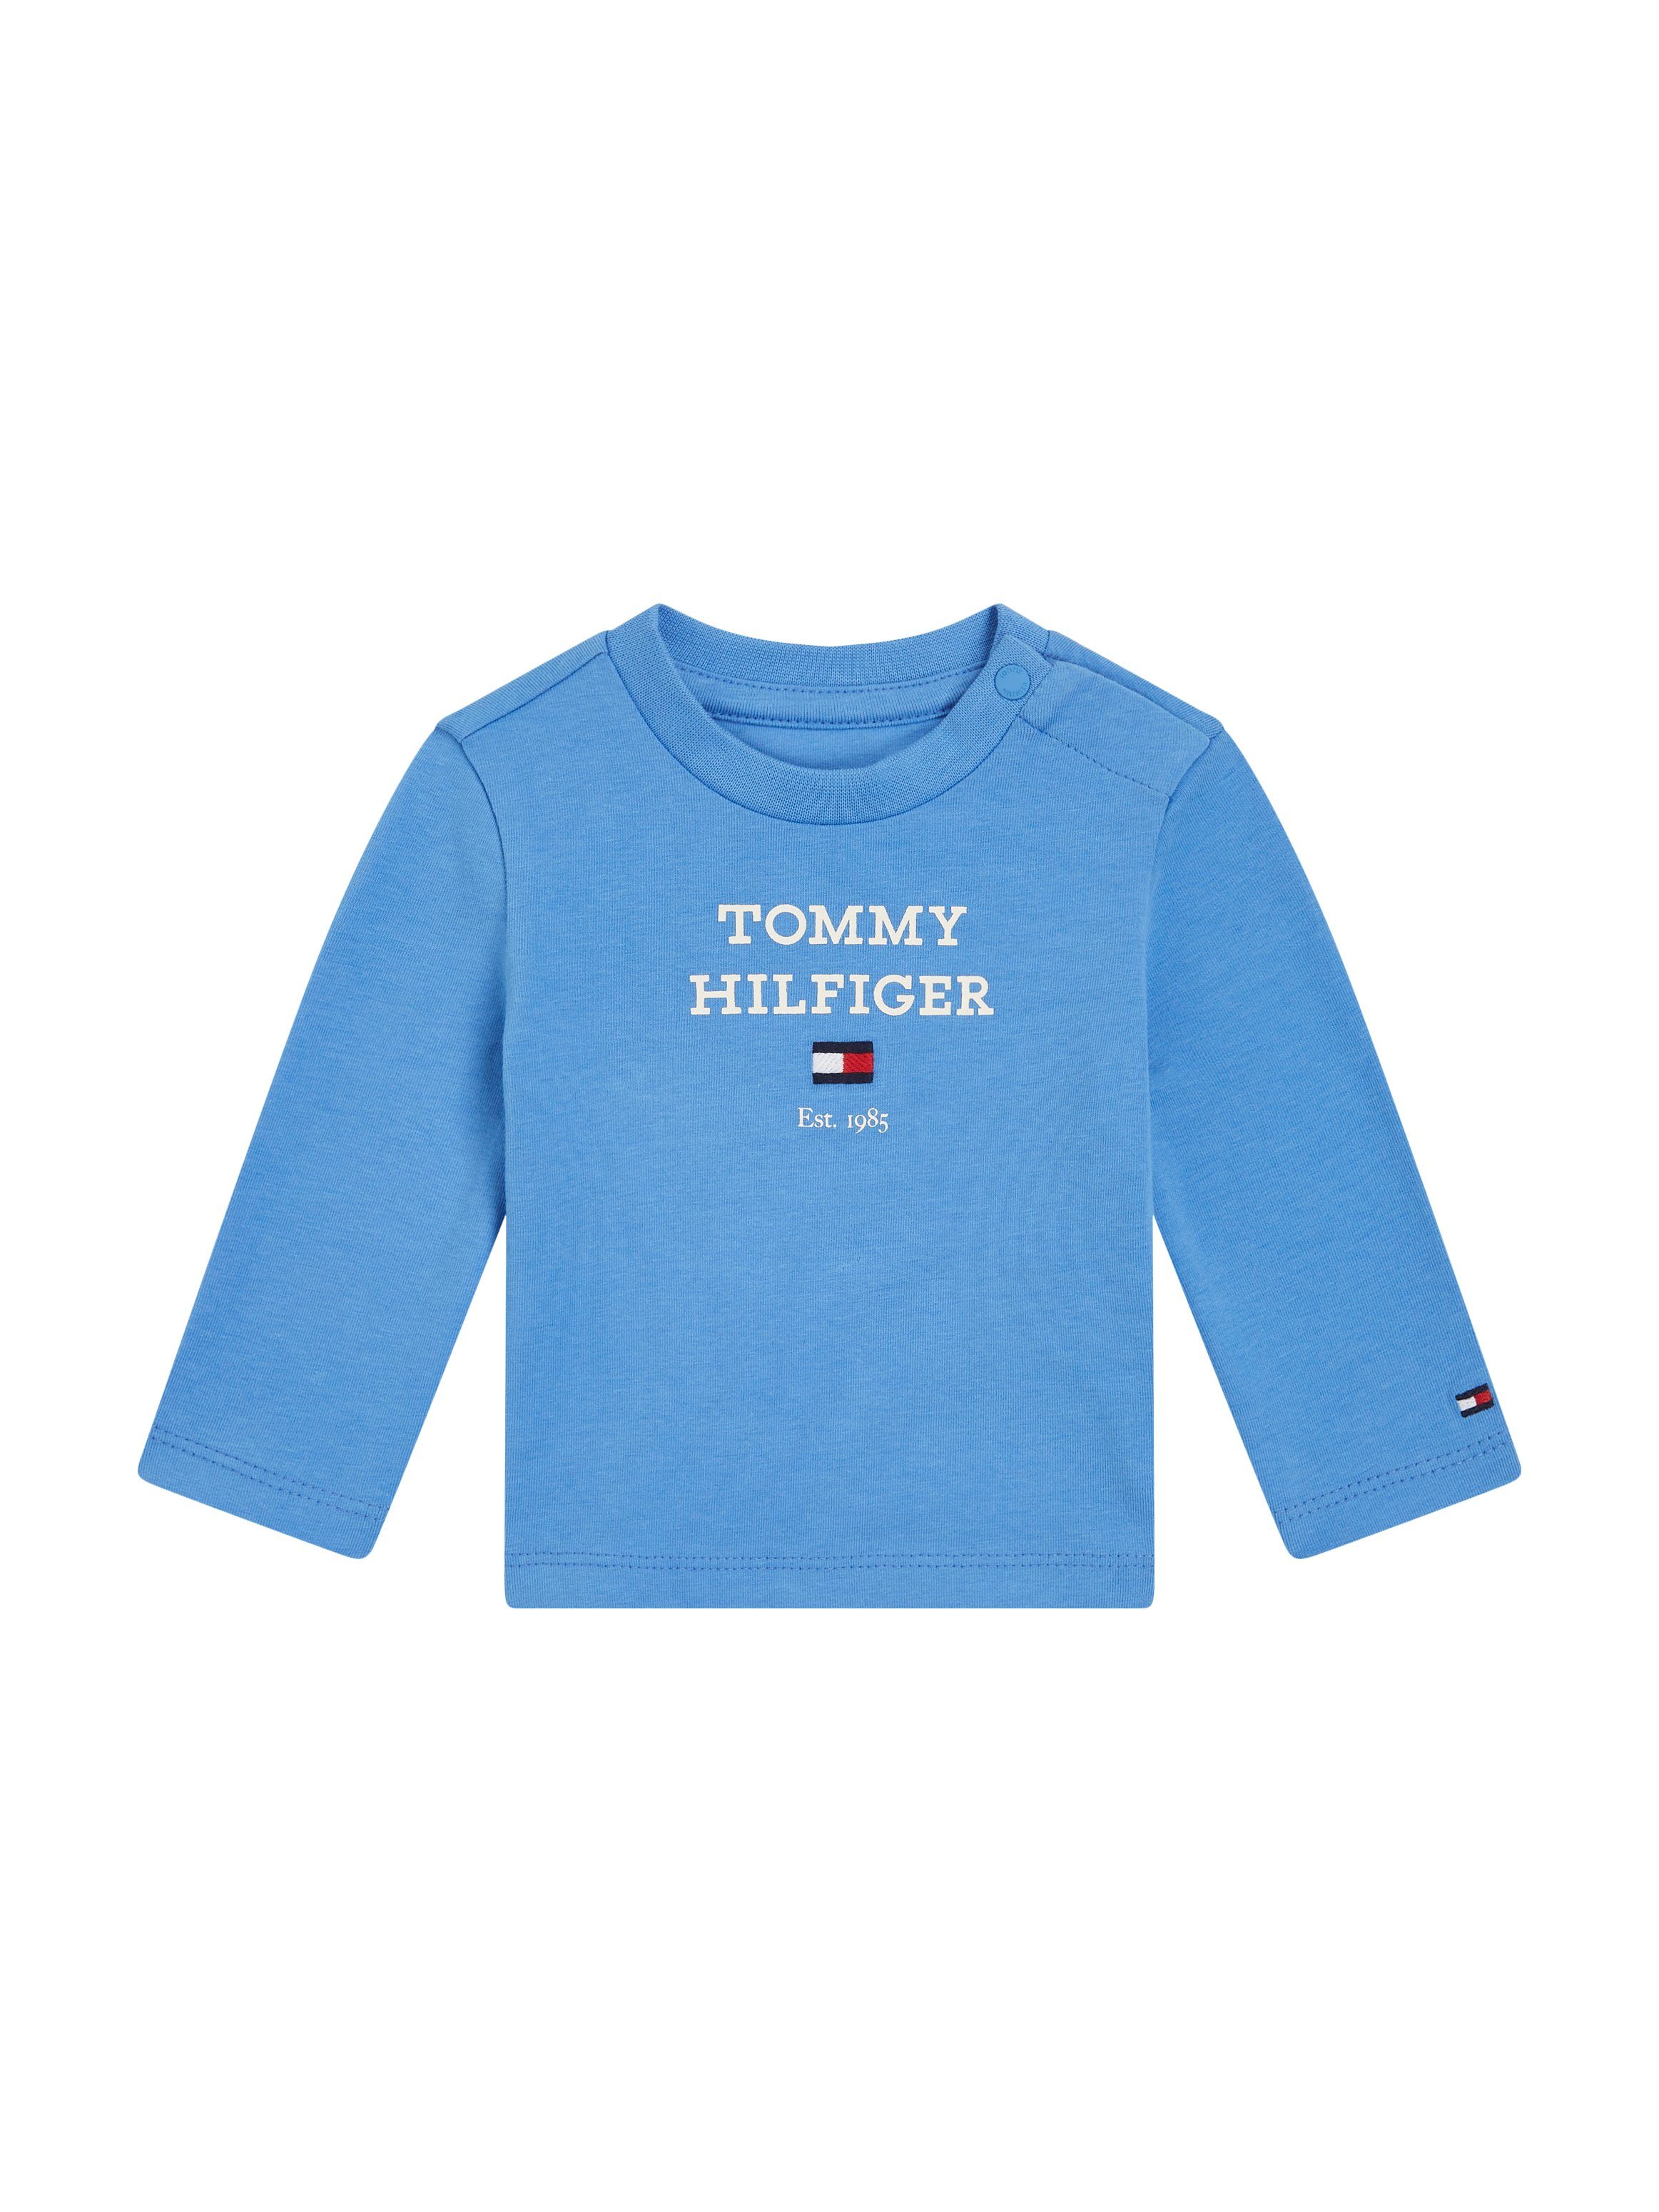 Tommy Hilfiger baby longsleeve met tekst lichtblauw Jongens Stretchkatoen Ronde hals 86